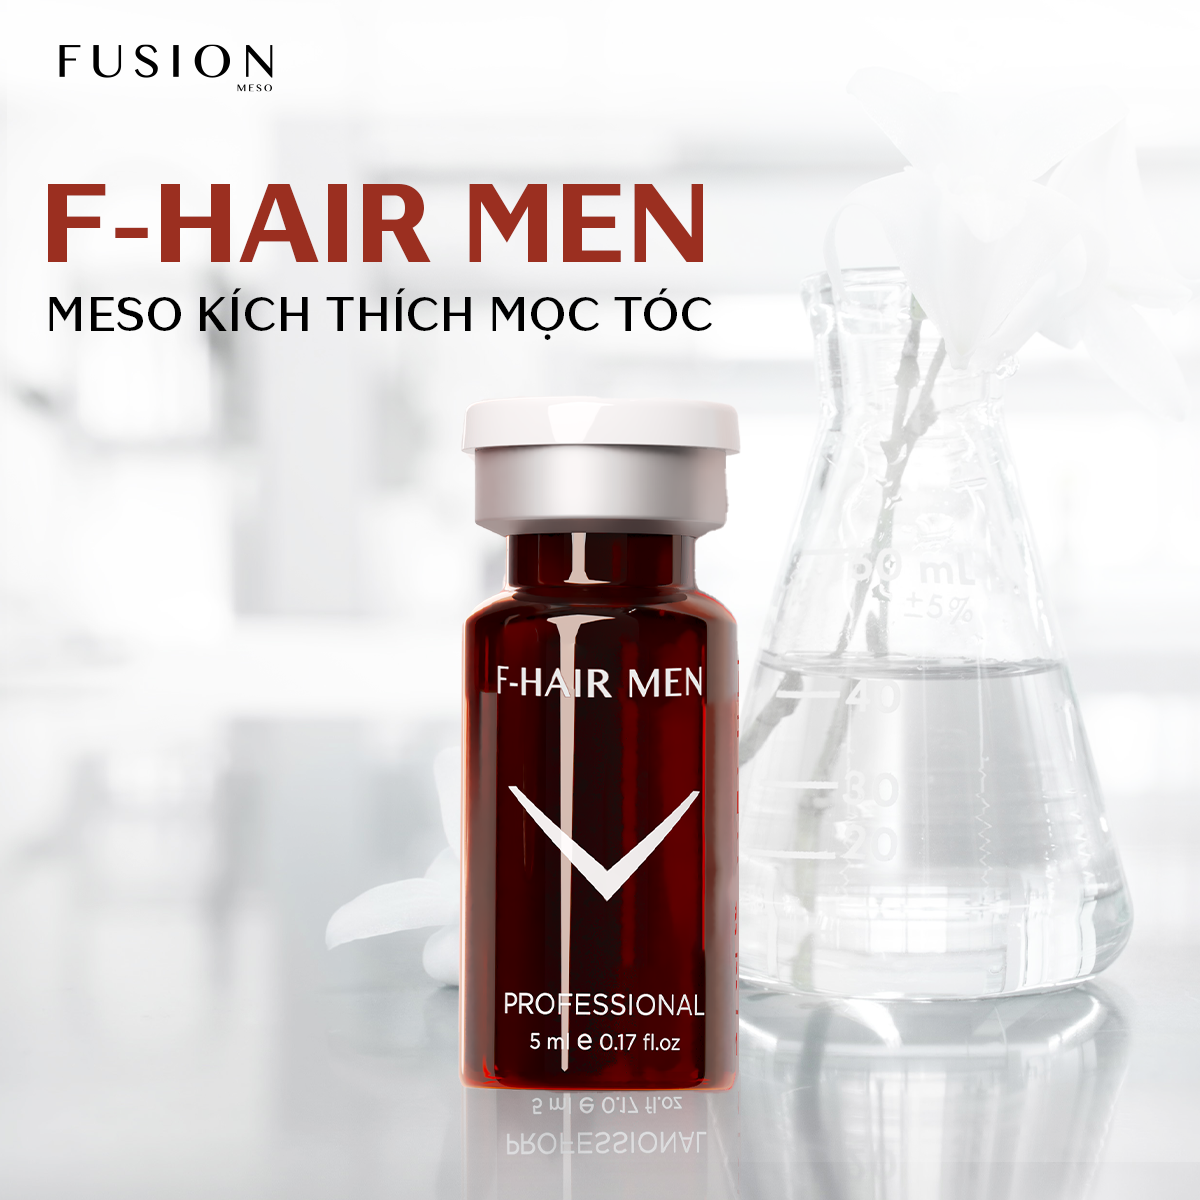 Tinh chất mọc tóc Fusion Mesotherapy F-Hair Men